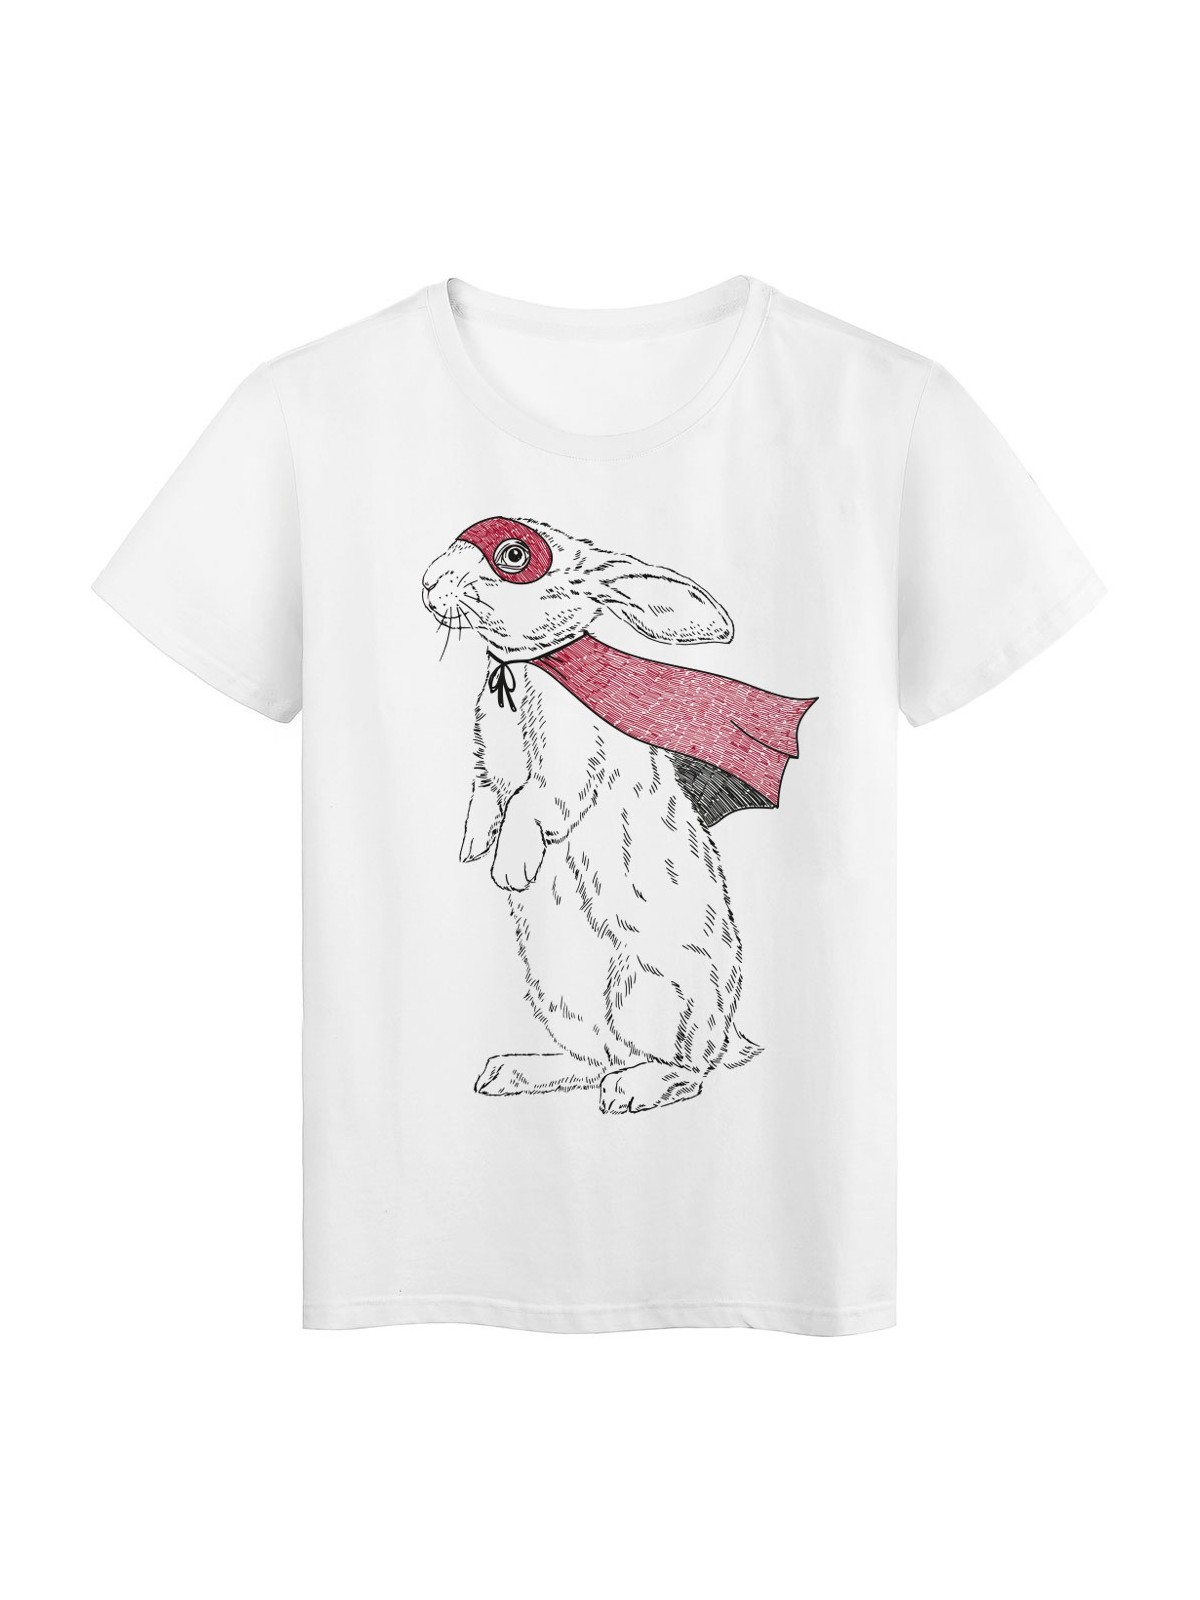 T-Shirt blanc Super lapin cape et masque rouge rabbit design rÃ©f Tee shirt 2144